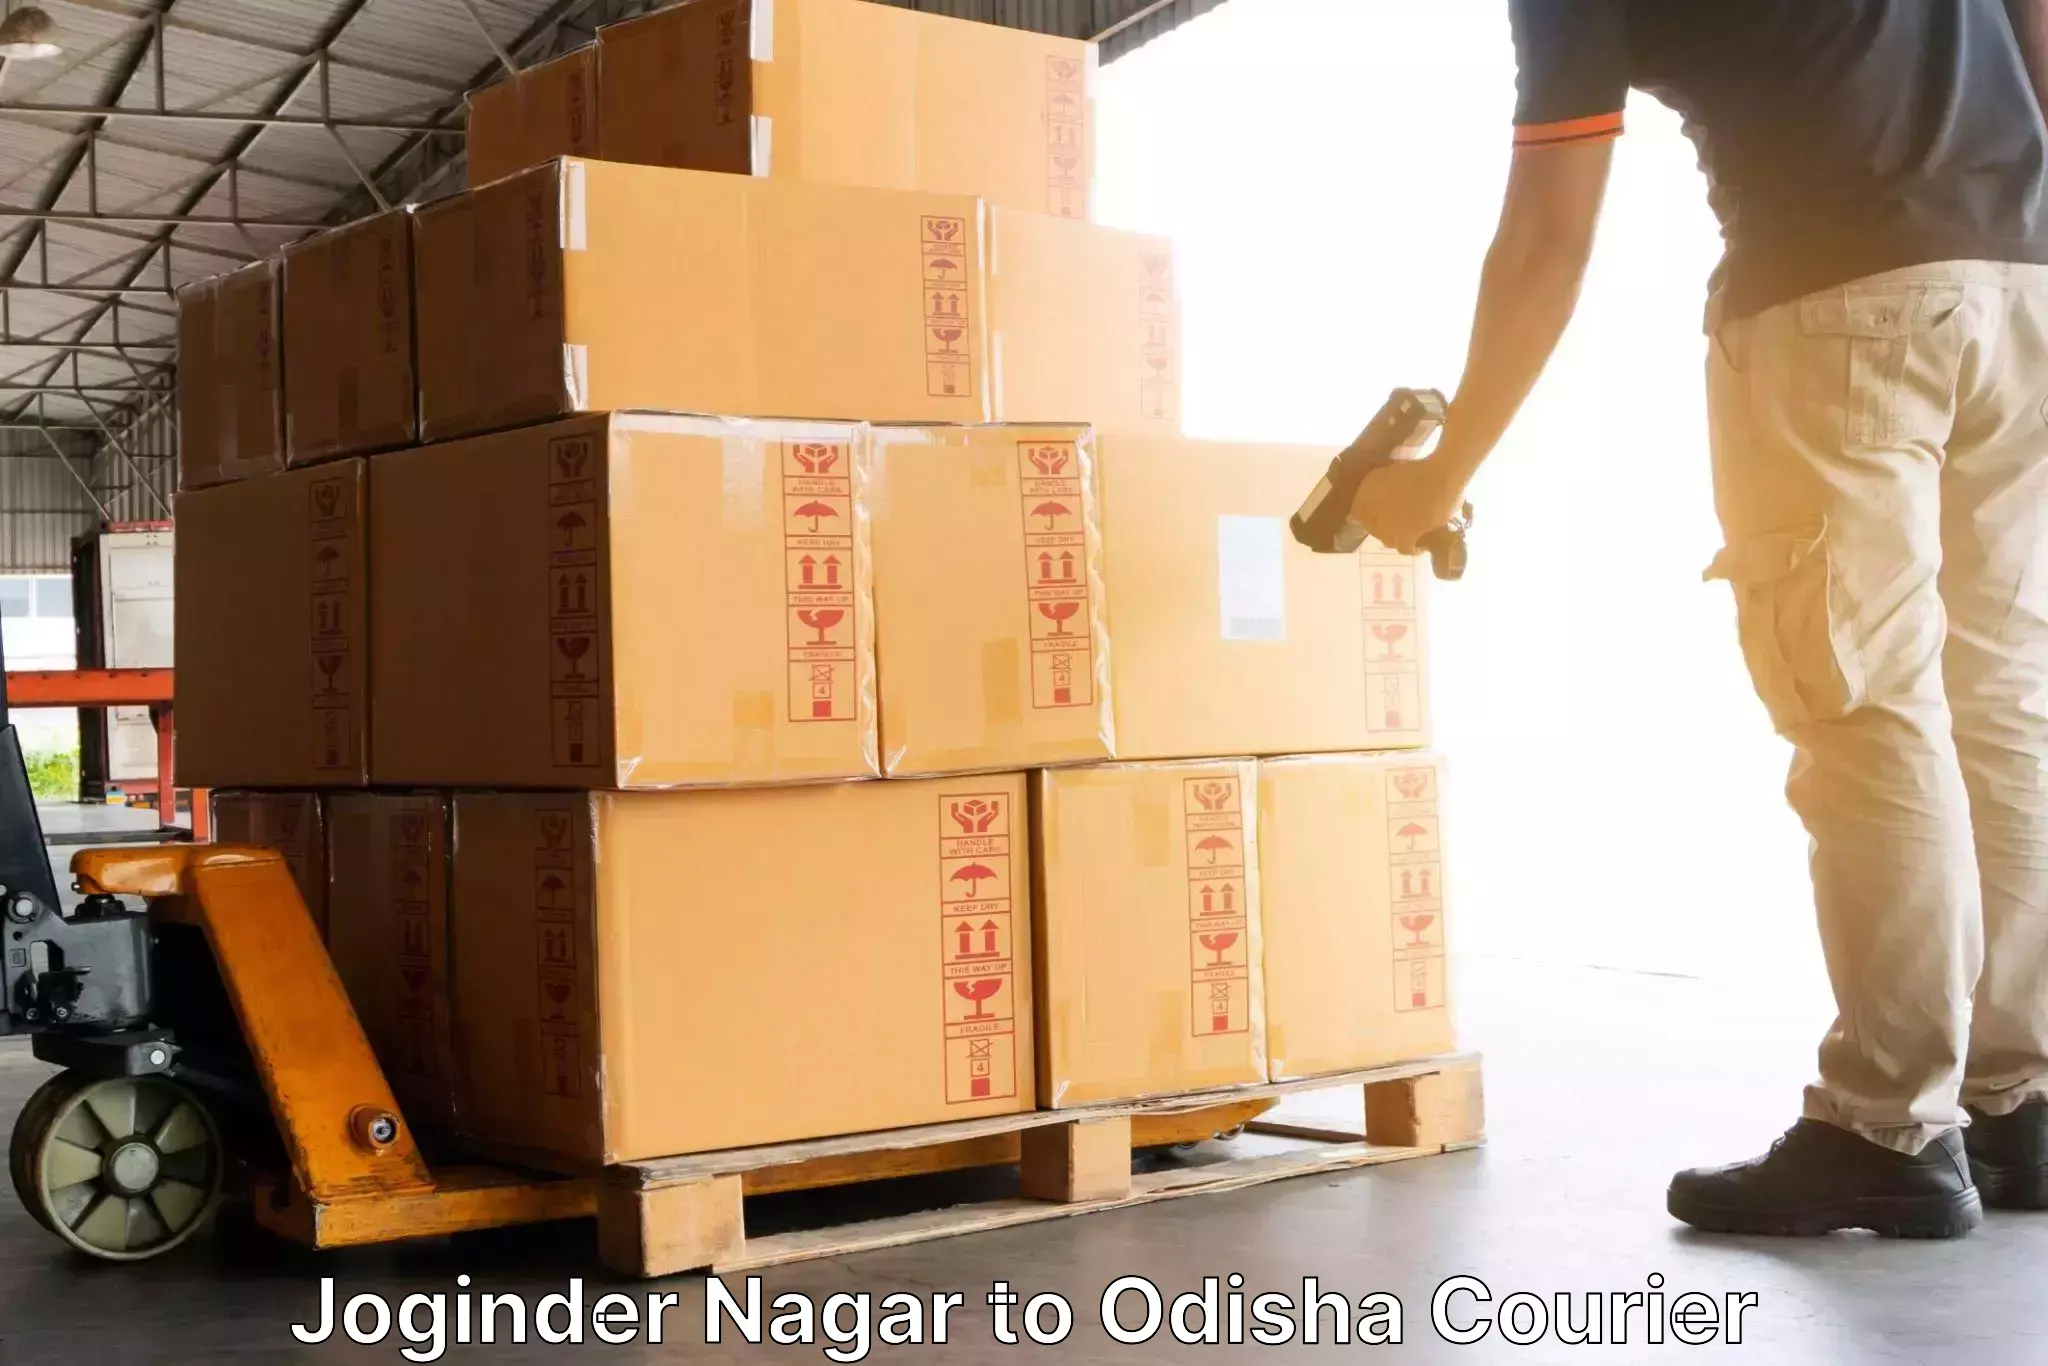 Postal and courier services Joginder Nagar to Bissam Cuttack